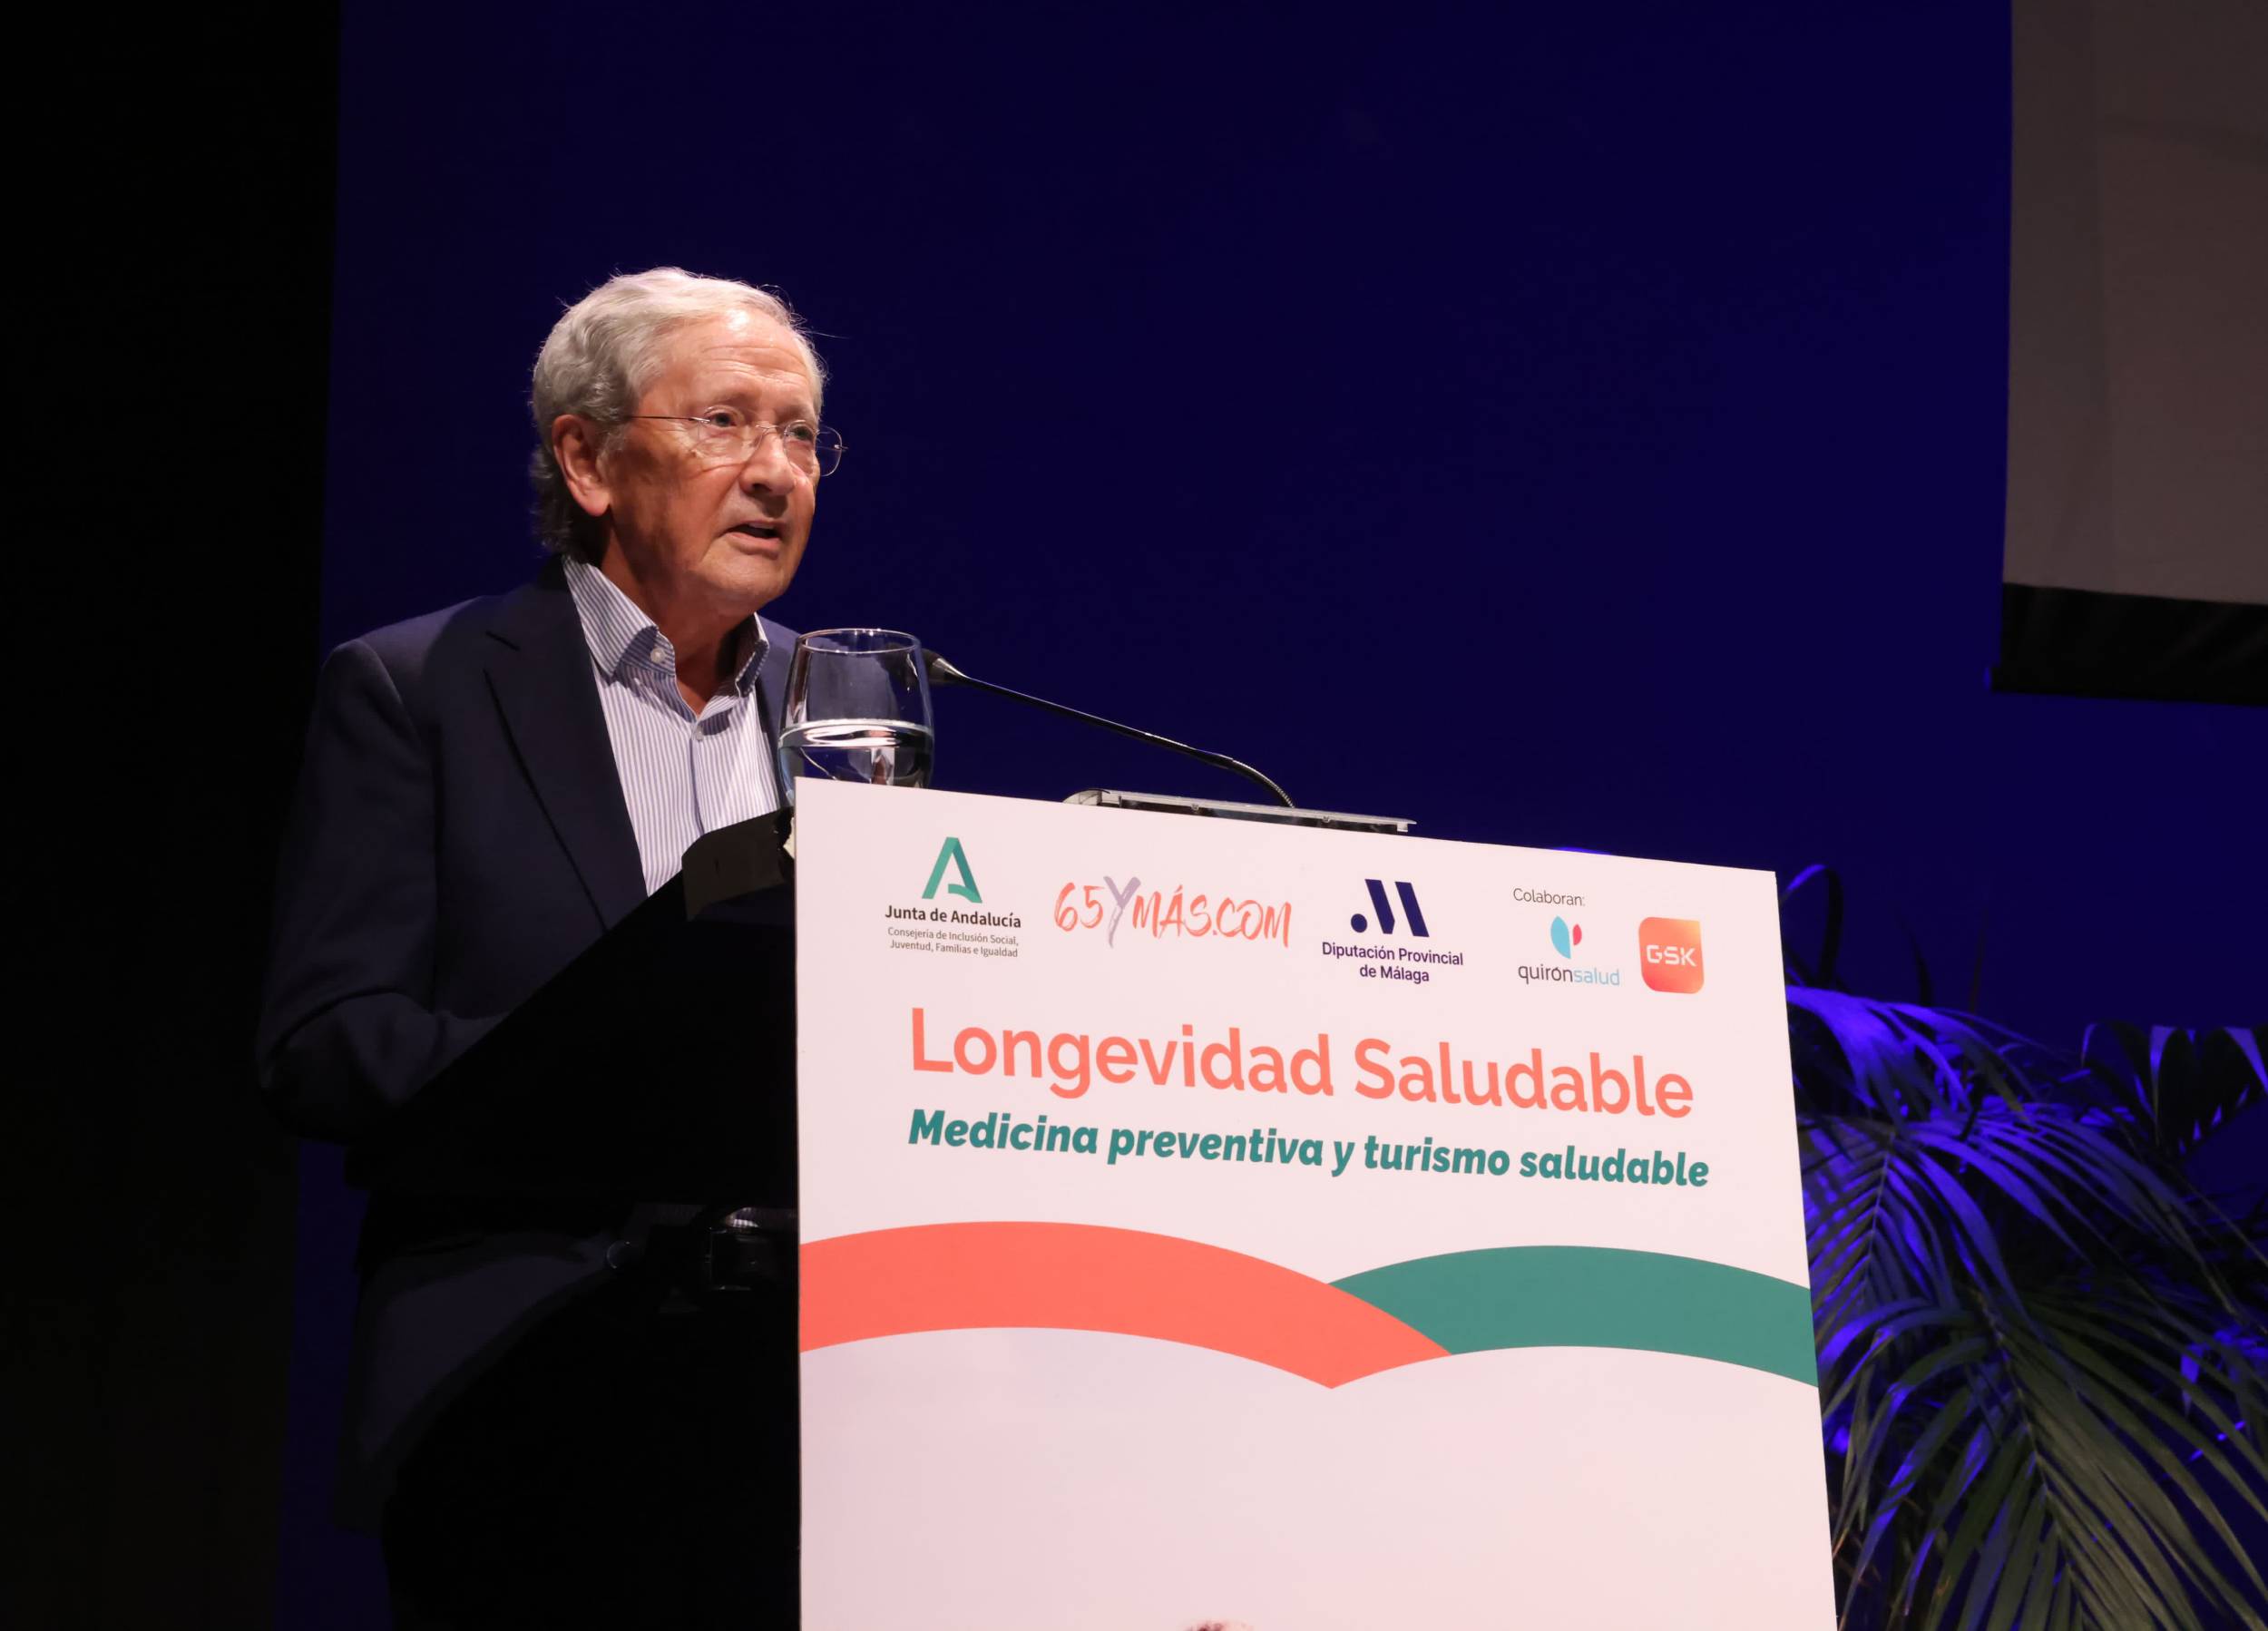 Fernando Ónega: "La salud es la base fundamental de la revolución de la longevidad"